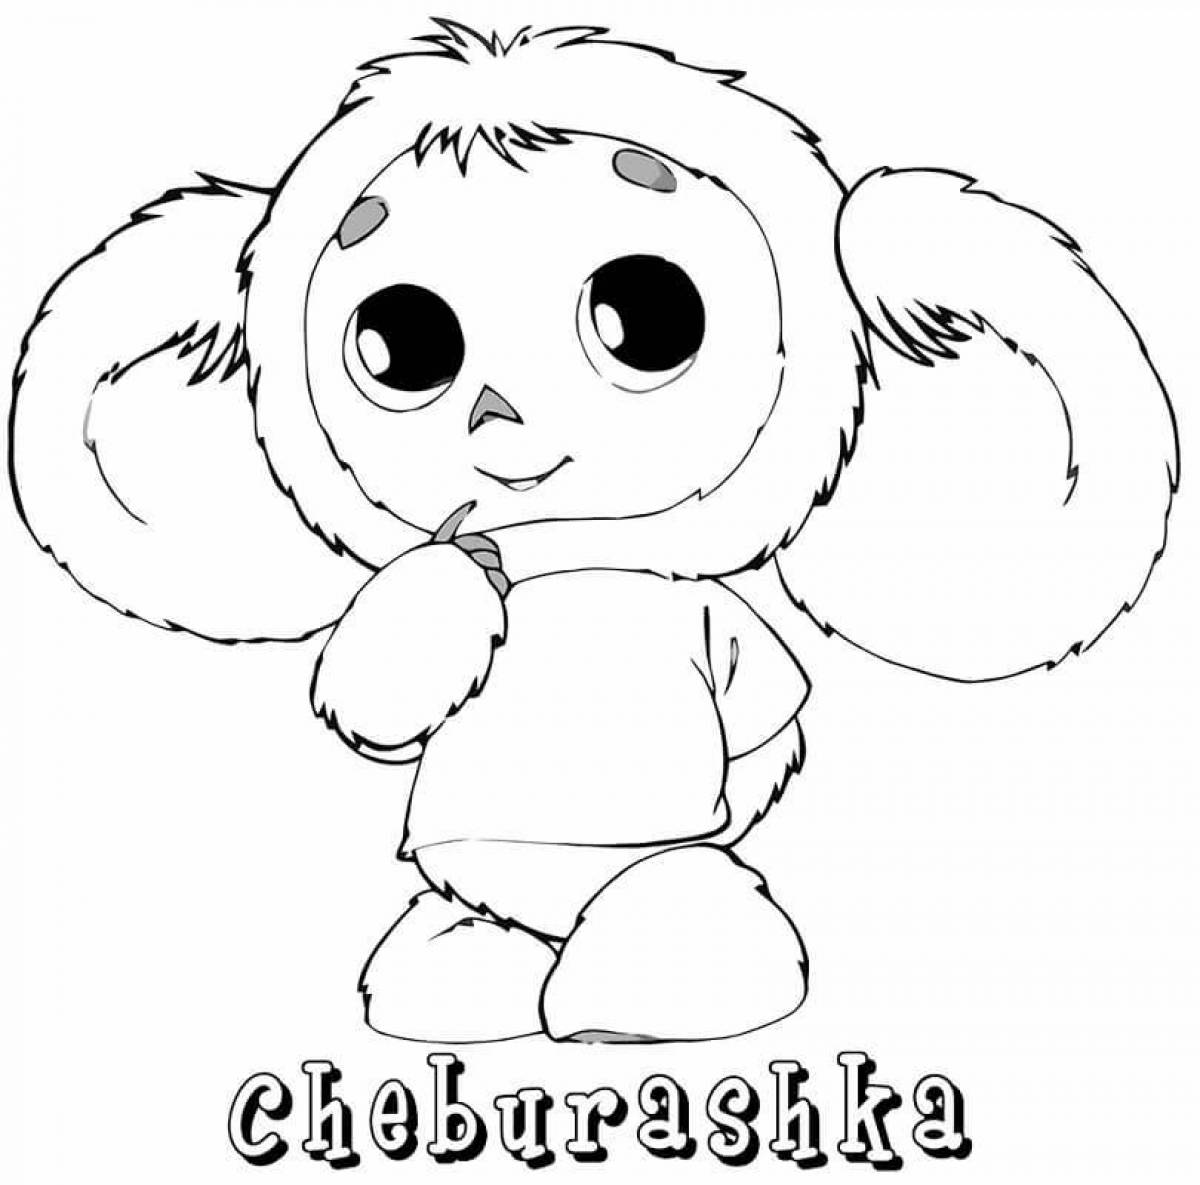 Cheburashka picture #5